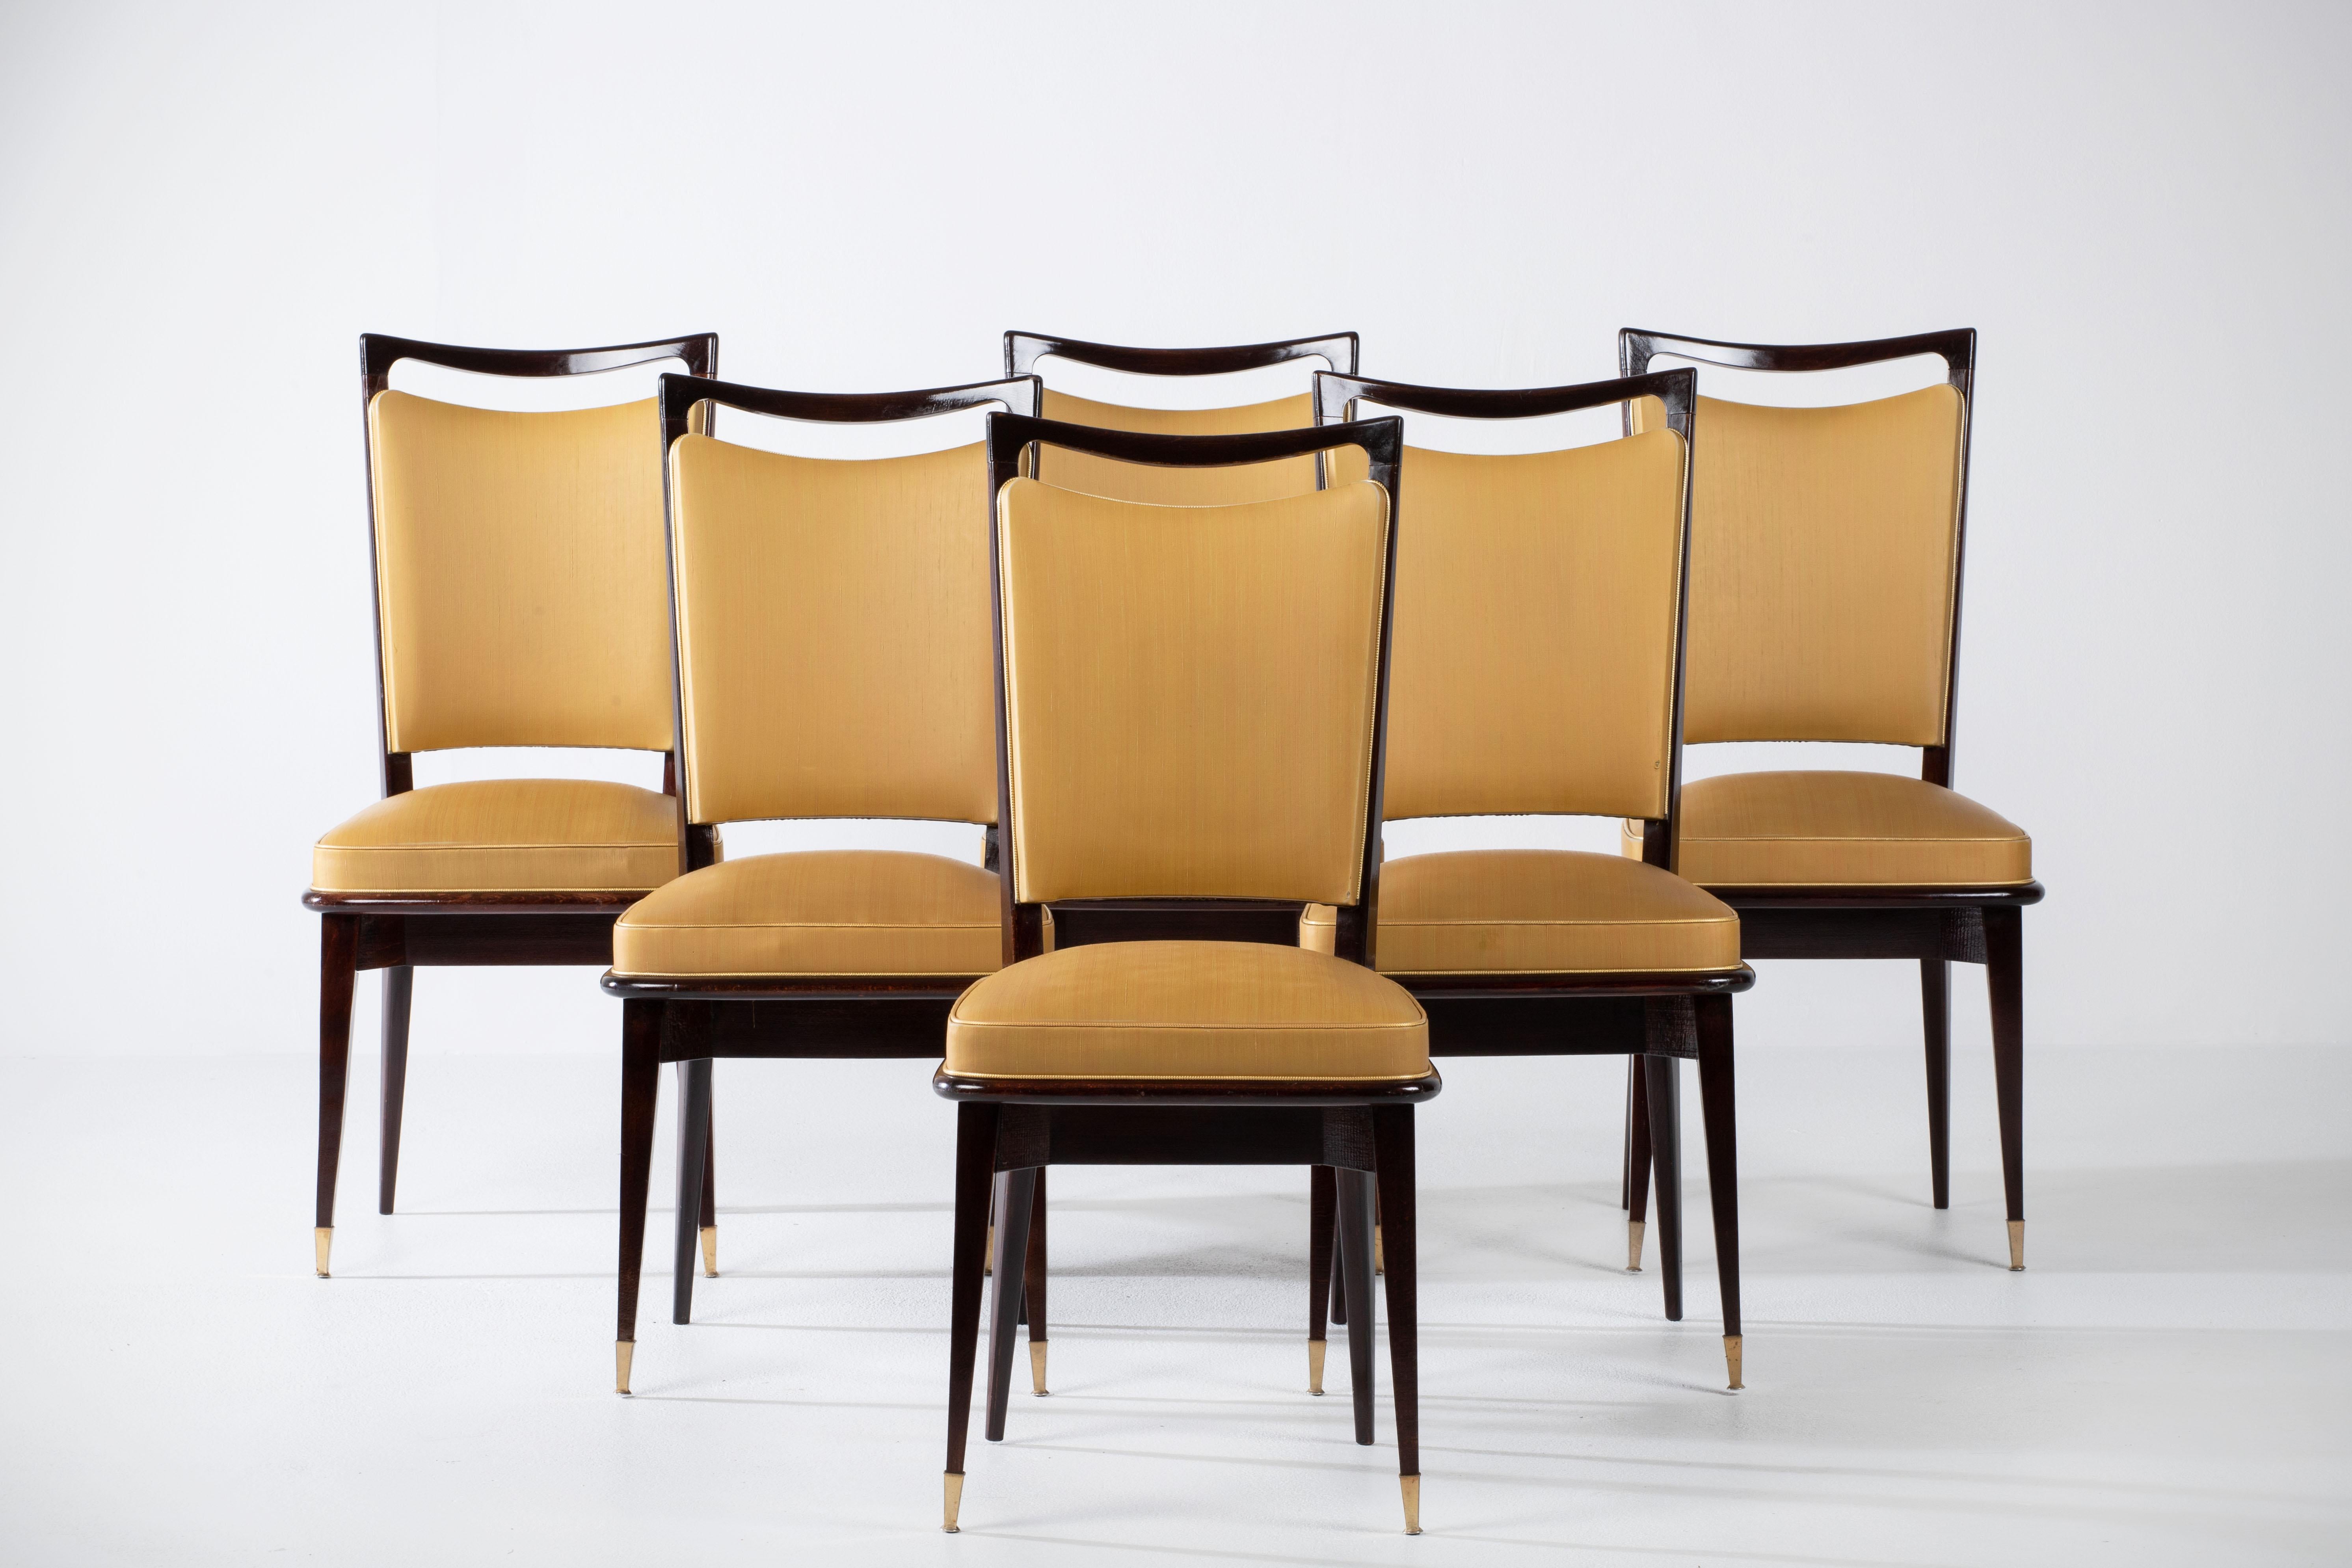 Set aus sechs gepolsterten Stühlen mit hoher Rückenlehne, bezogen mit gelbem Vynil, mit traditionellen französischen Designelementen und einer tiefen Eichenholzoberfläche.

Im Stil von René Prou, Albert-Lucien Guenot, Pomone, André Arbus,